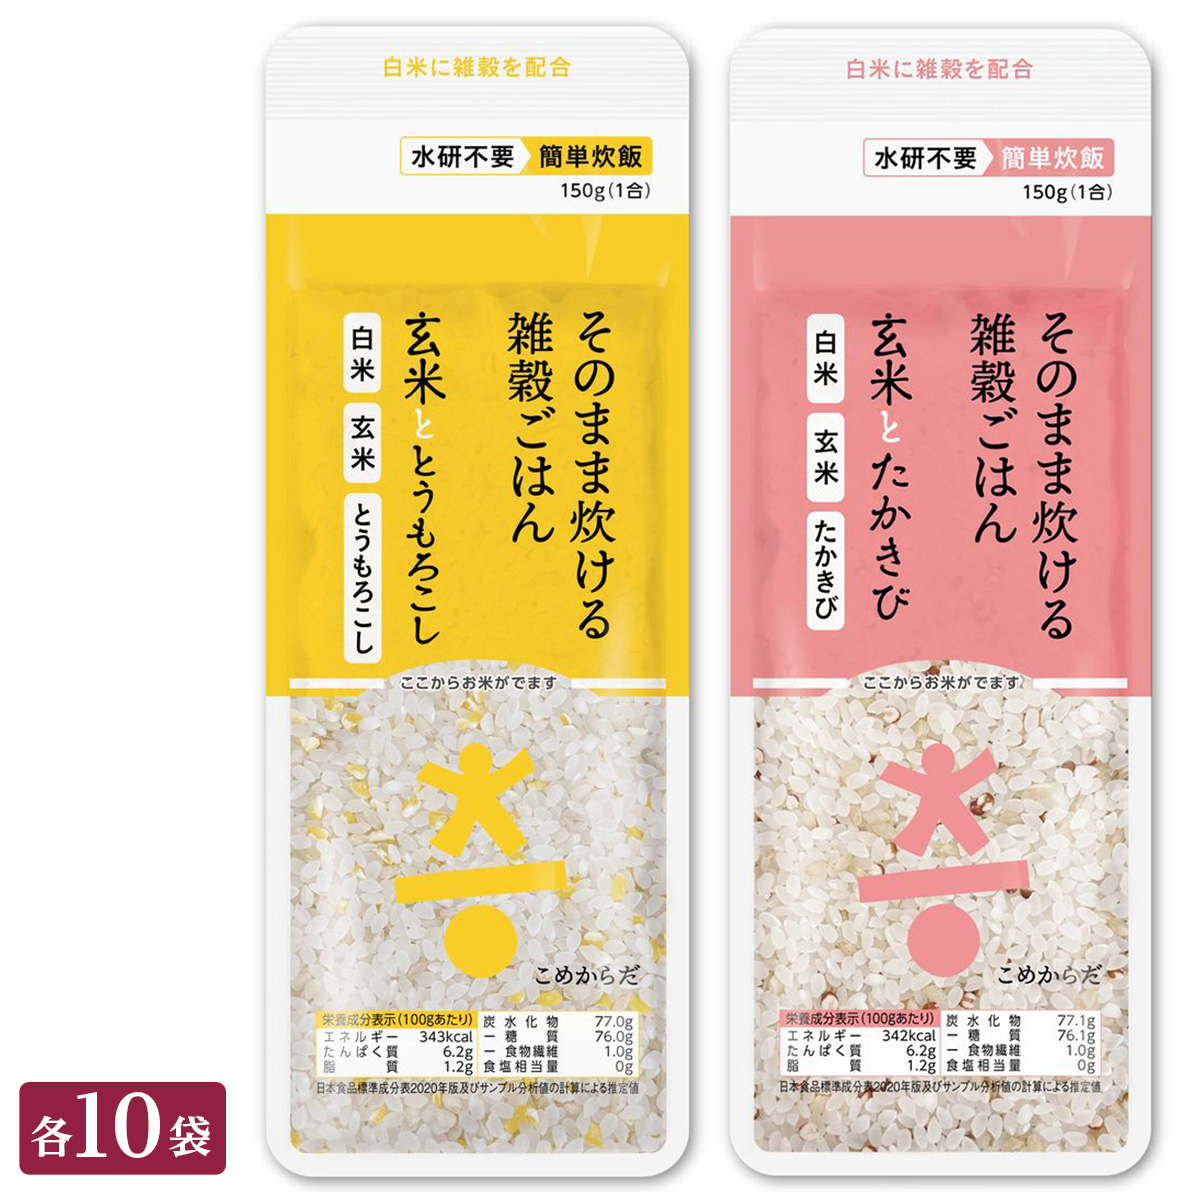 ○こめからだ 2種(玄米ととうもろこし 玄米とたかきび) 各150g×10袋 (合計20袋)